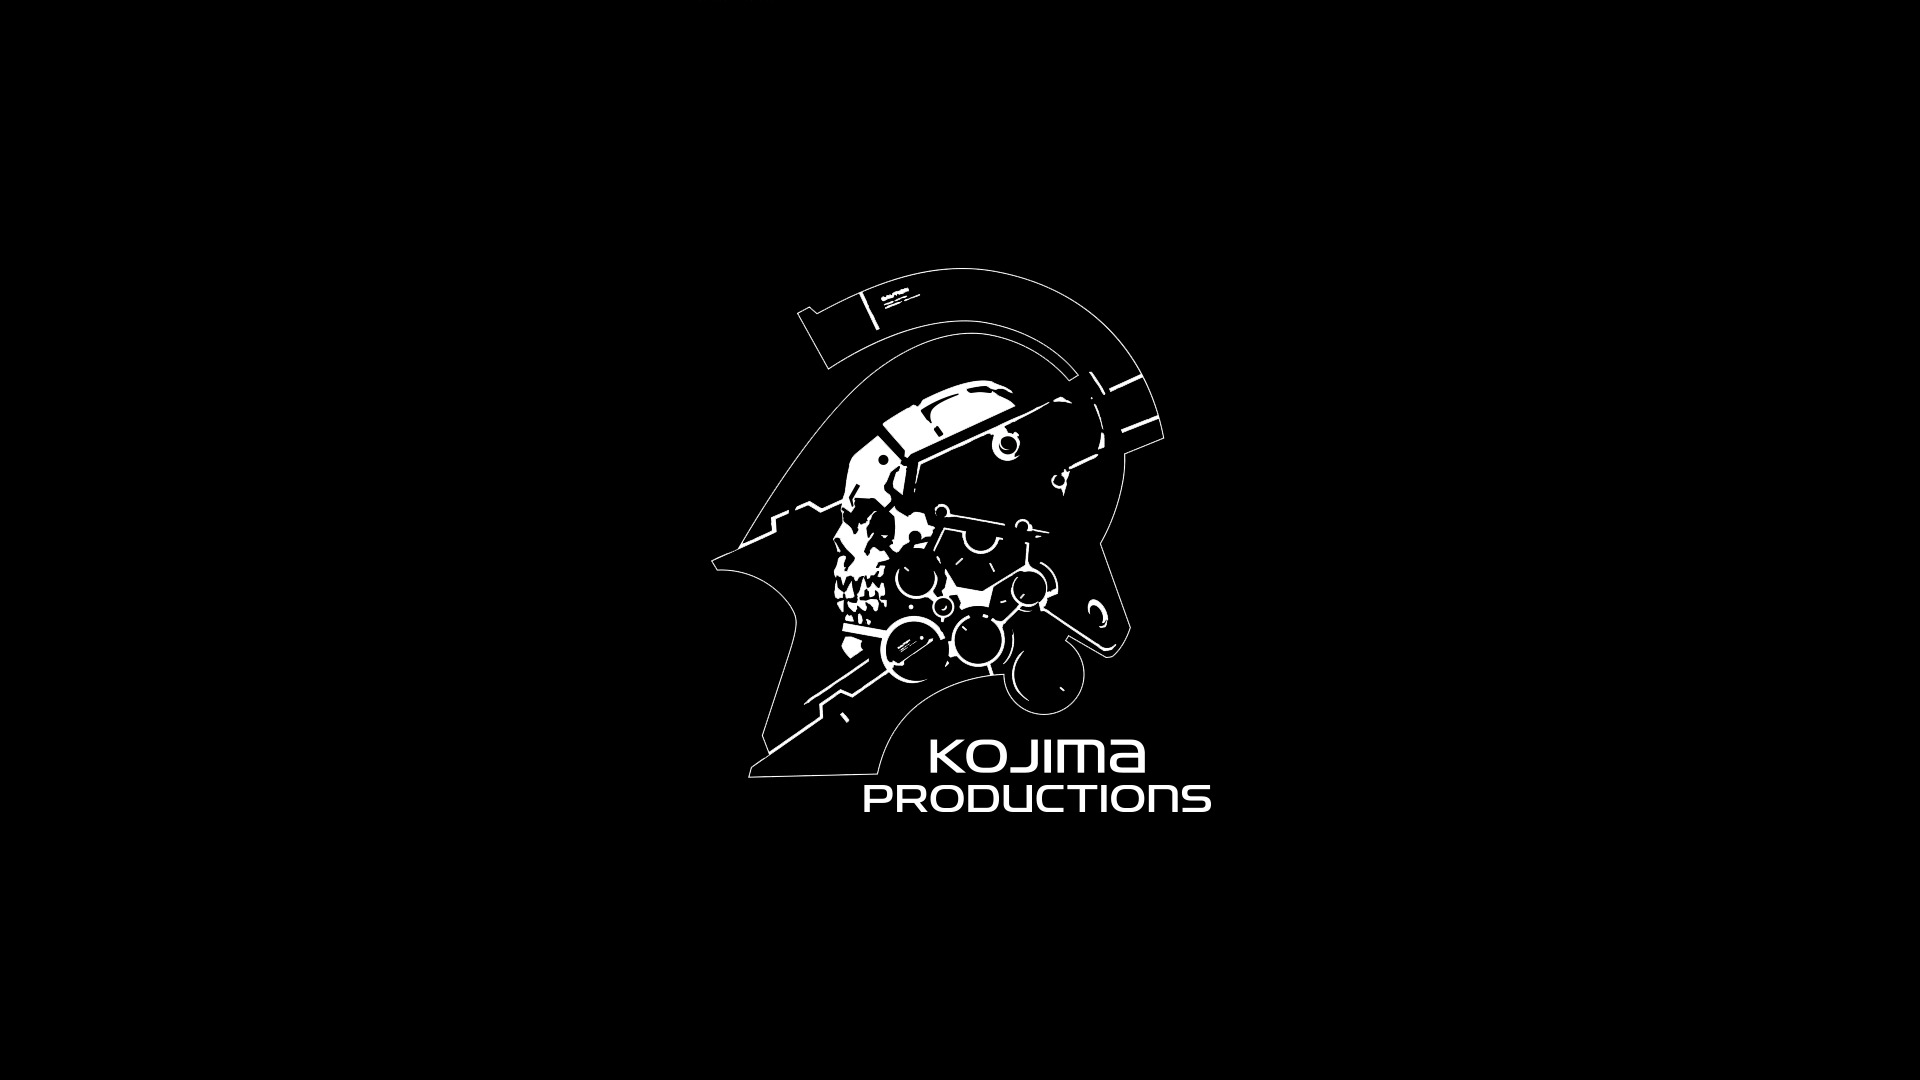 Metal Gear Solid, Hideo Kojima, Kojima Productions Wallpaper